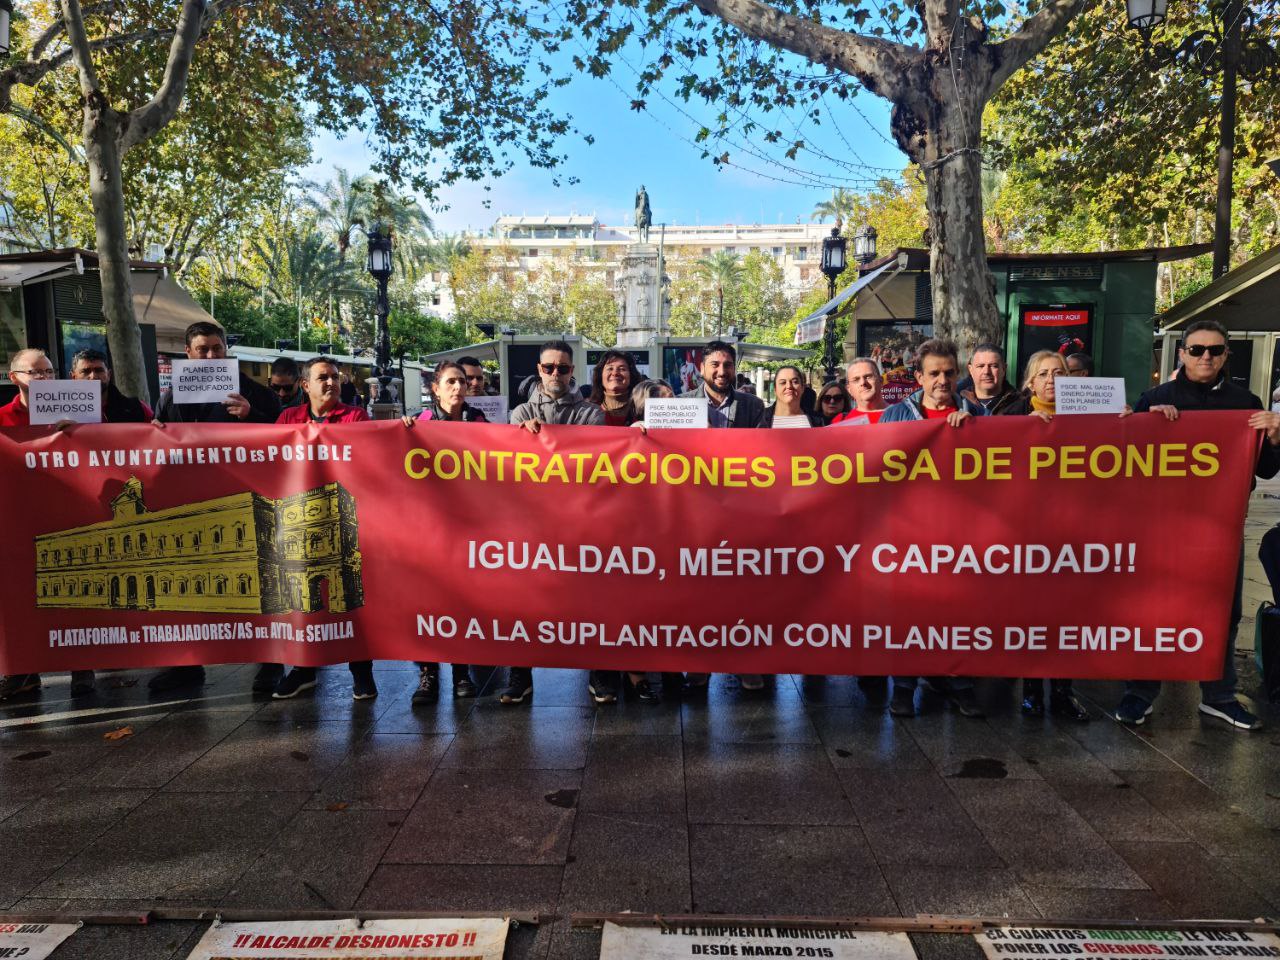 IU que no se suplan con planes de empleo las propias de los empleados municipales - IU Sevilla ciudad